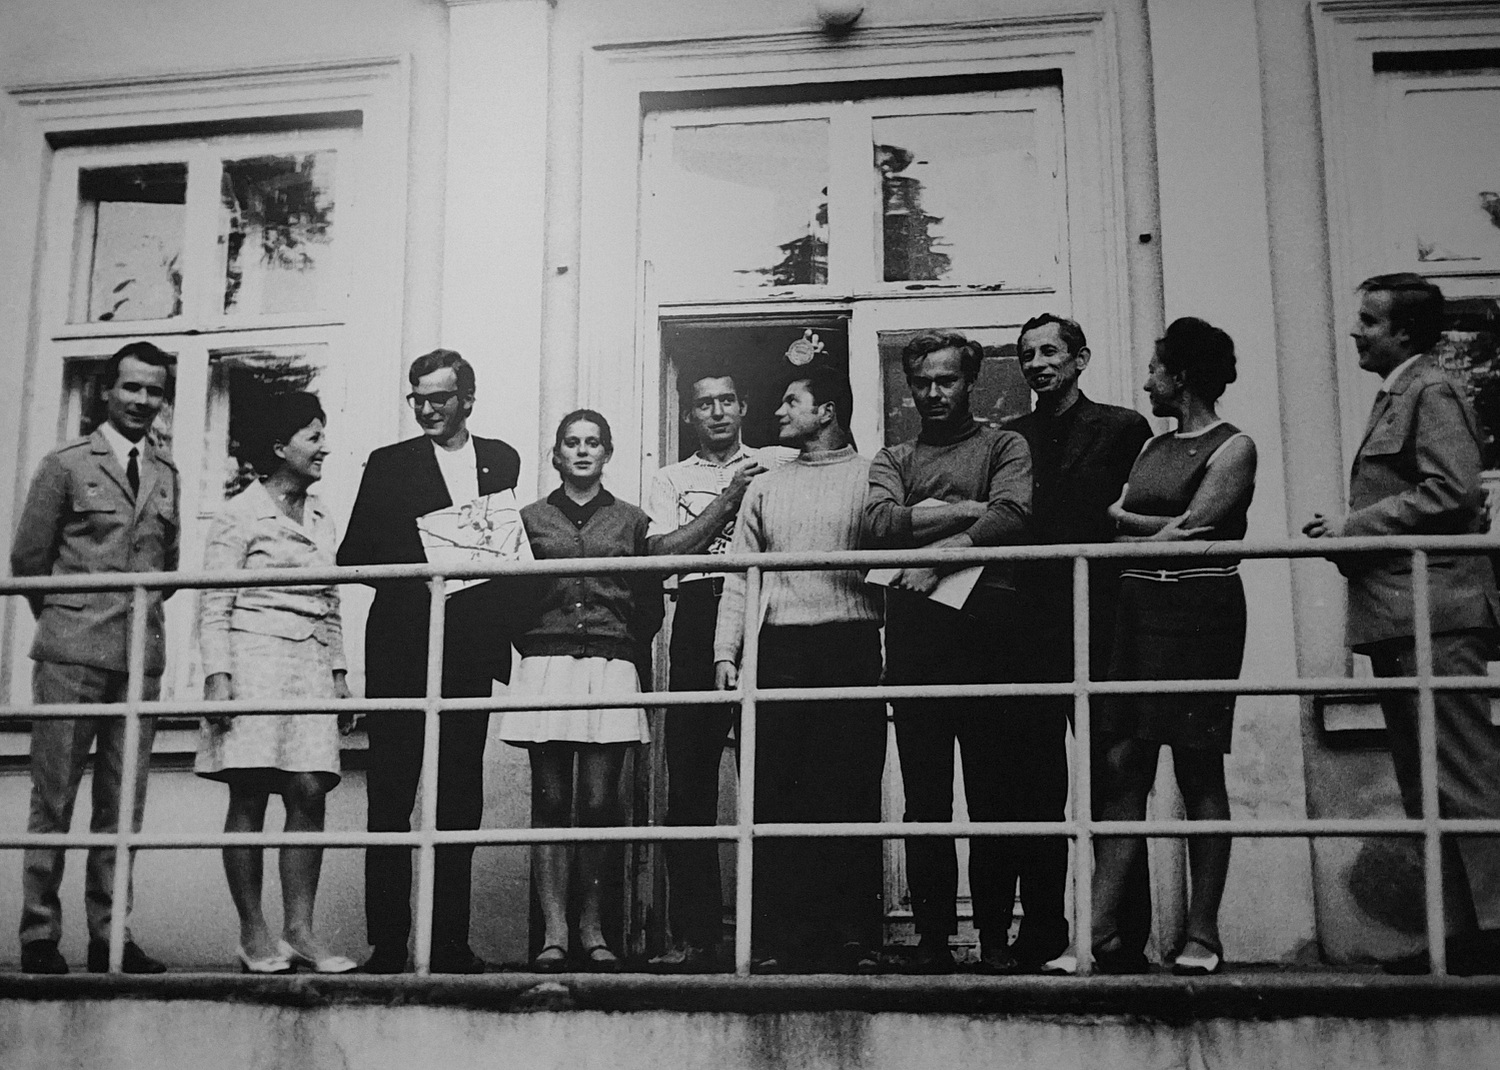 1969 rok. Na tyłach budynku rozgłośni przy ulicy Świerczewskiego. Na zdjęciu: redaktor Maria Olkuśnik (druga z lewej), redaktor Zdzisława Wierciakowa (druga z prawej), redaktor Jarosław Kołodziej (trzeci z prawej) i goście radia